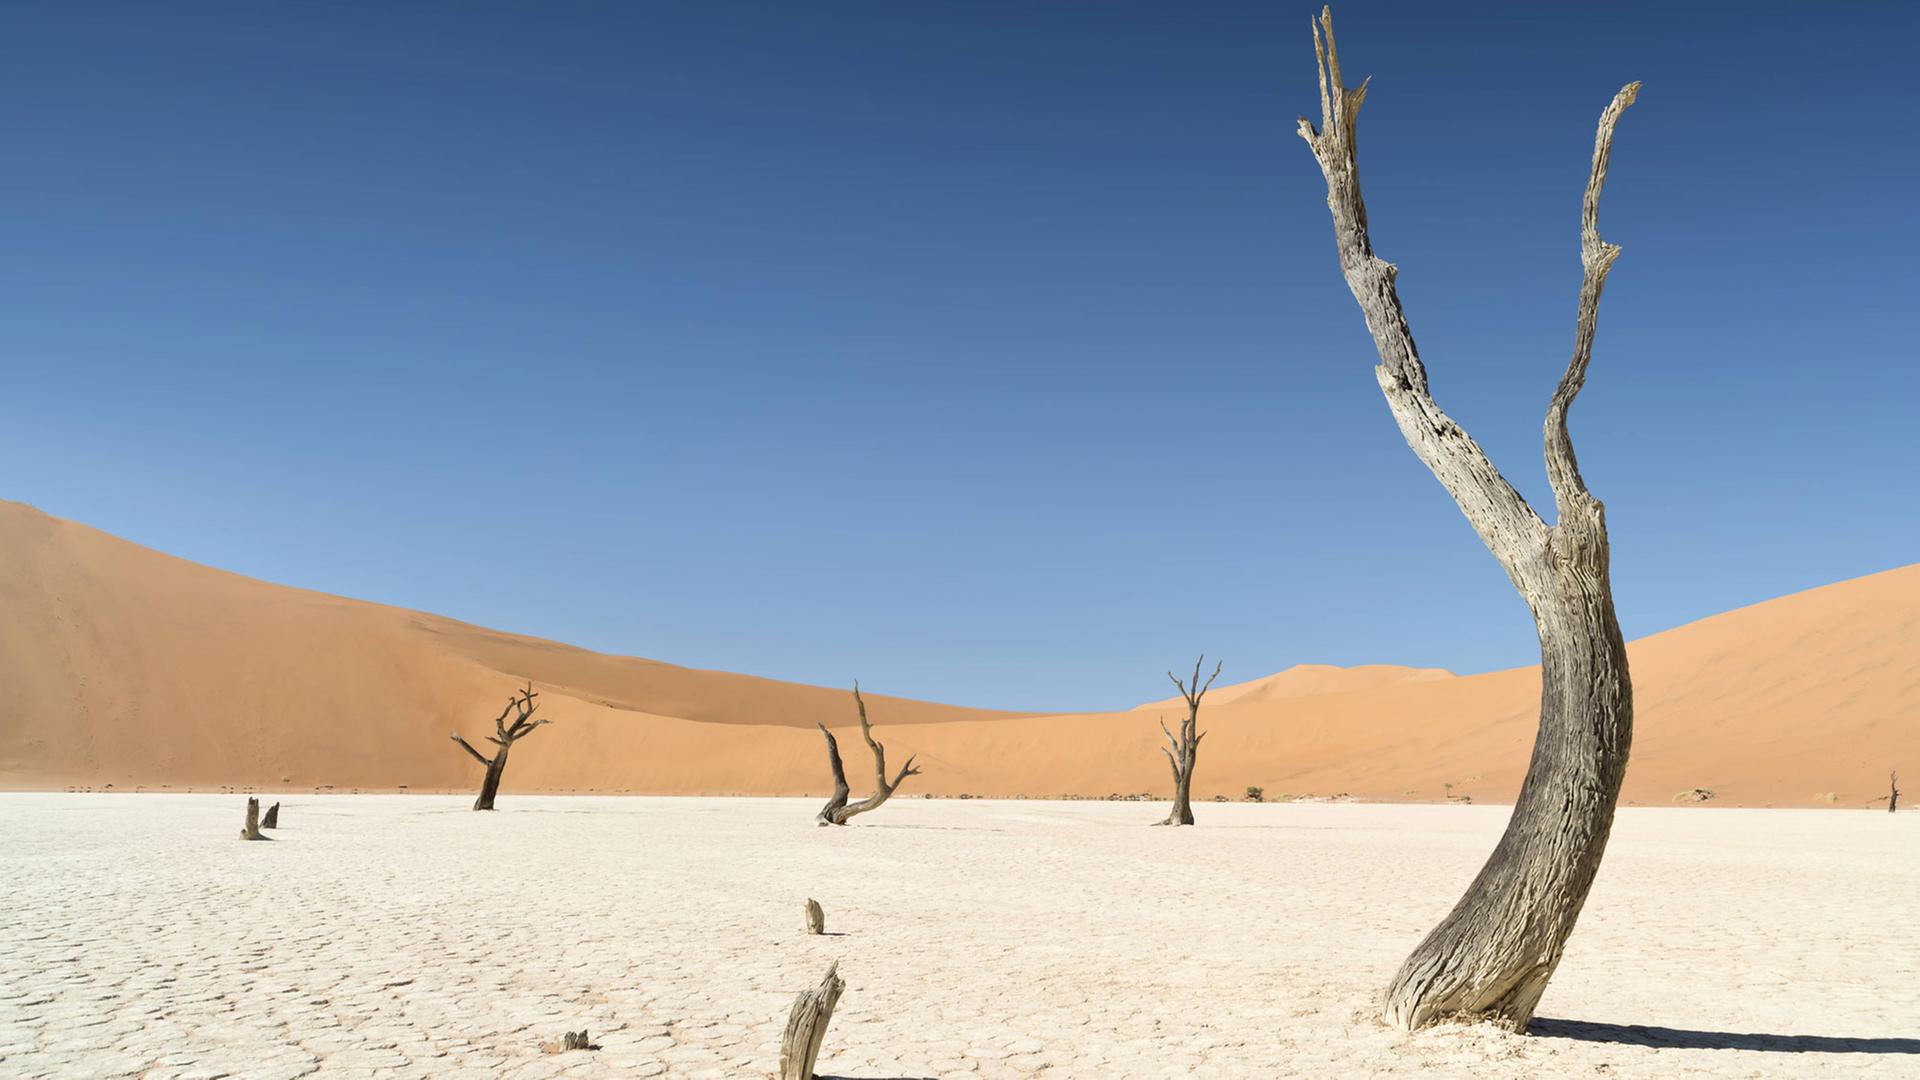 Ein dürrer Baum im Wüstensand